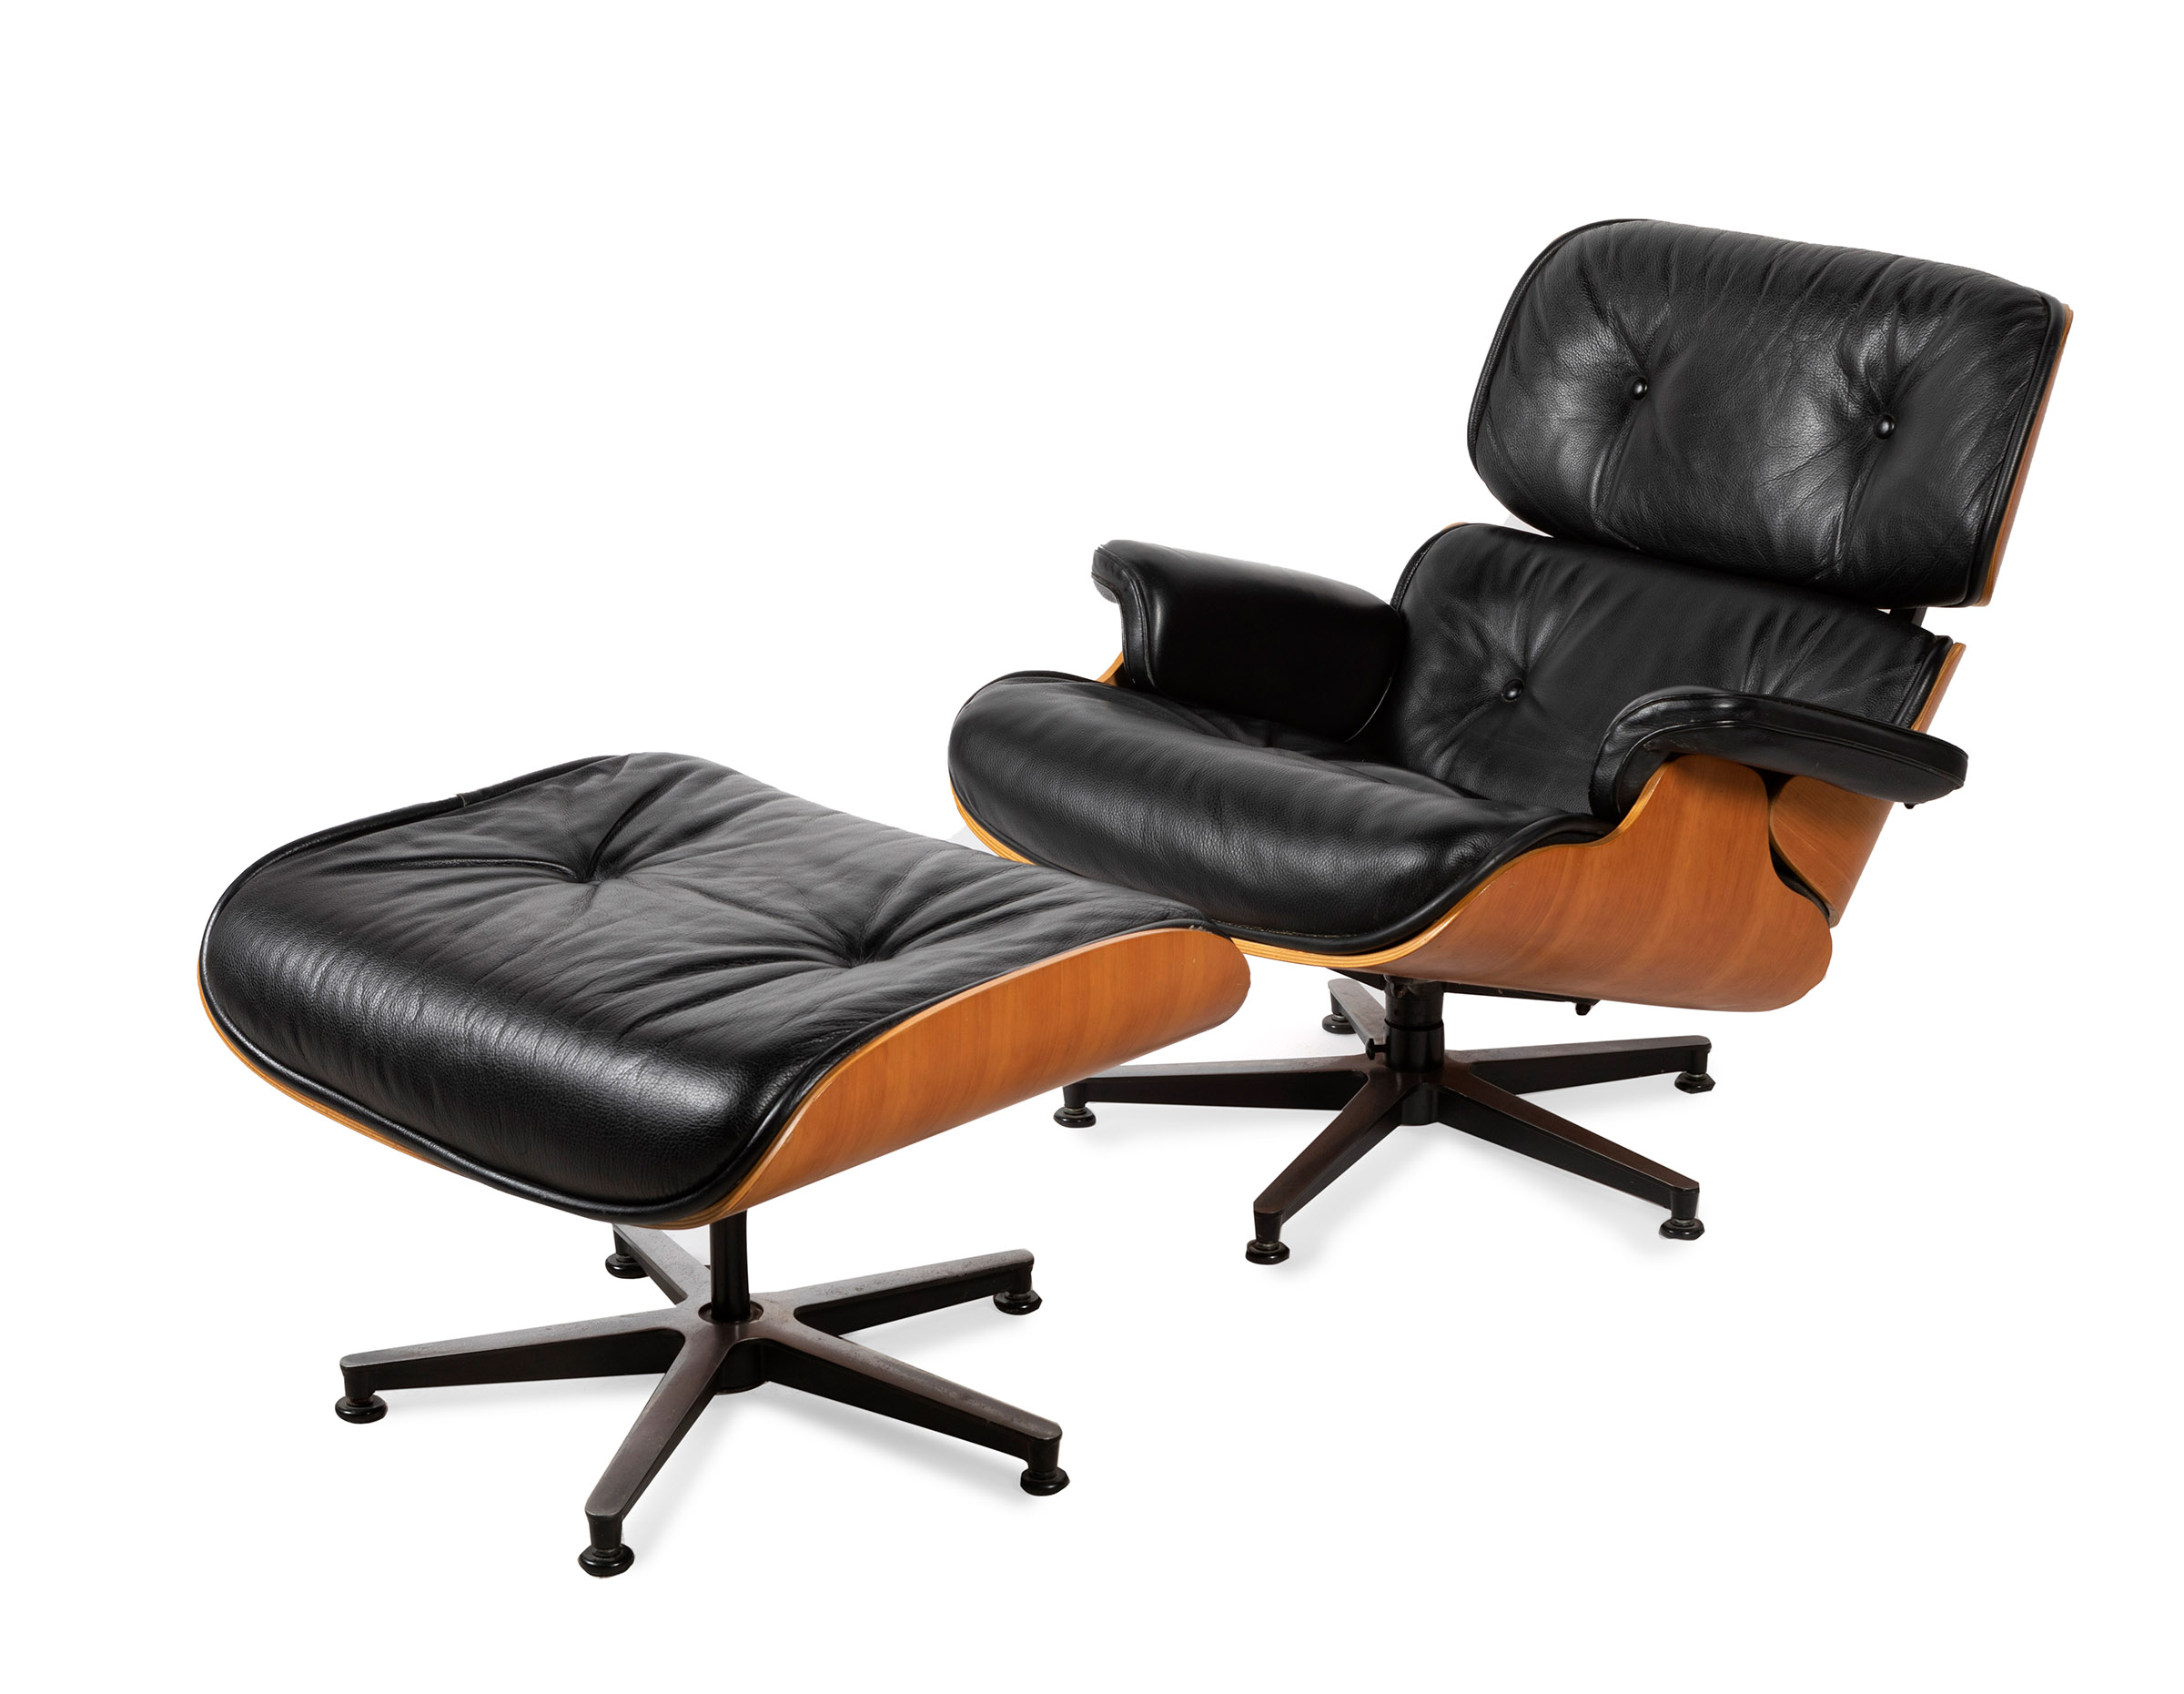 CHARLES EAMES (USA, 1907 - 1978) & RAY EAMES (USA, 1912 - 1988)."Lounge Chair & Ottoman", design